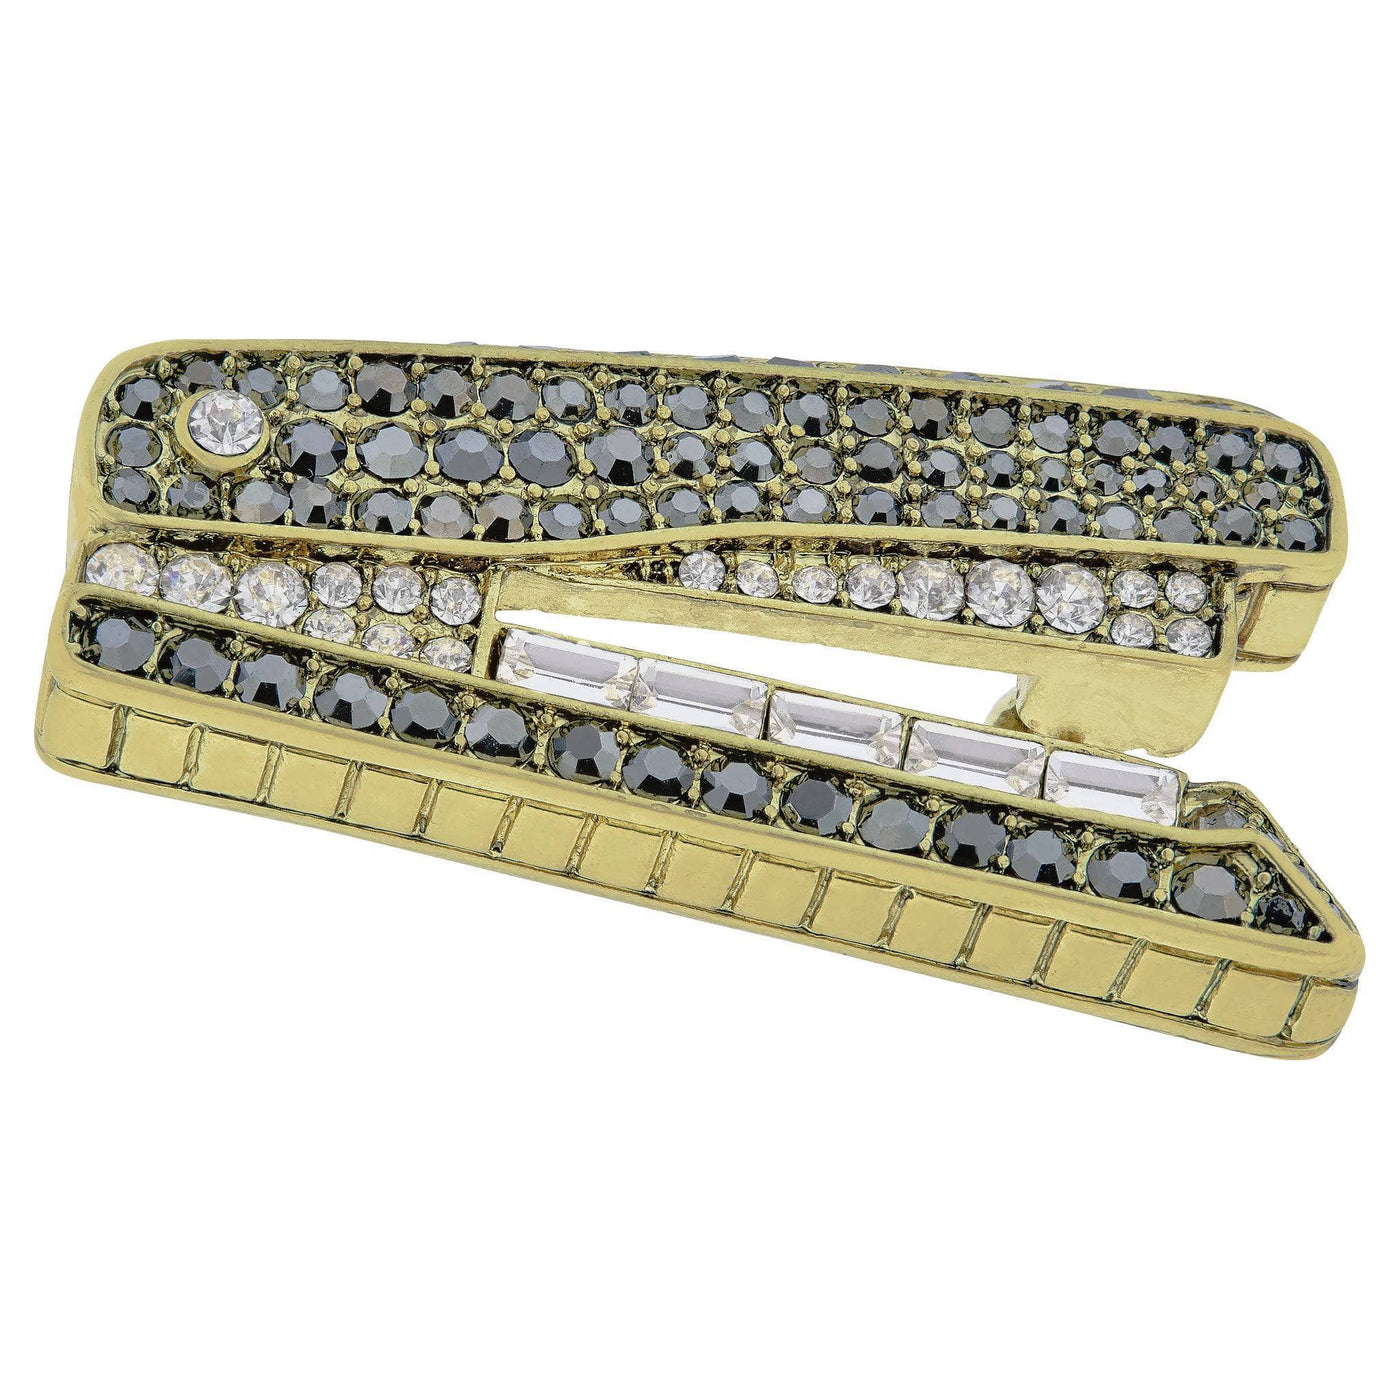 HEIDI DAUS®"Sparkling Stapler" Crystal Stapler Pin